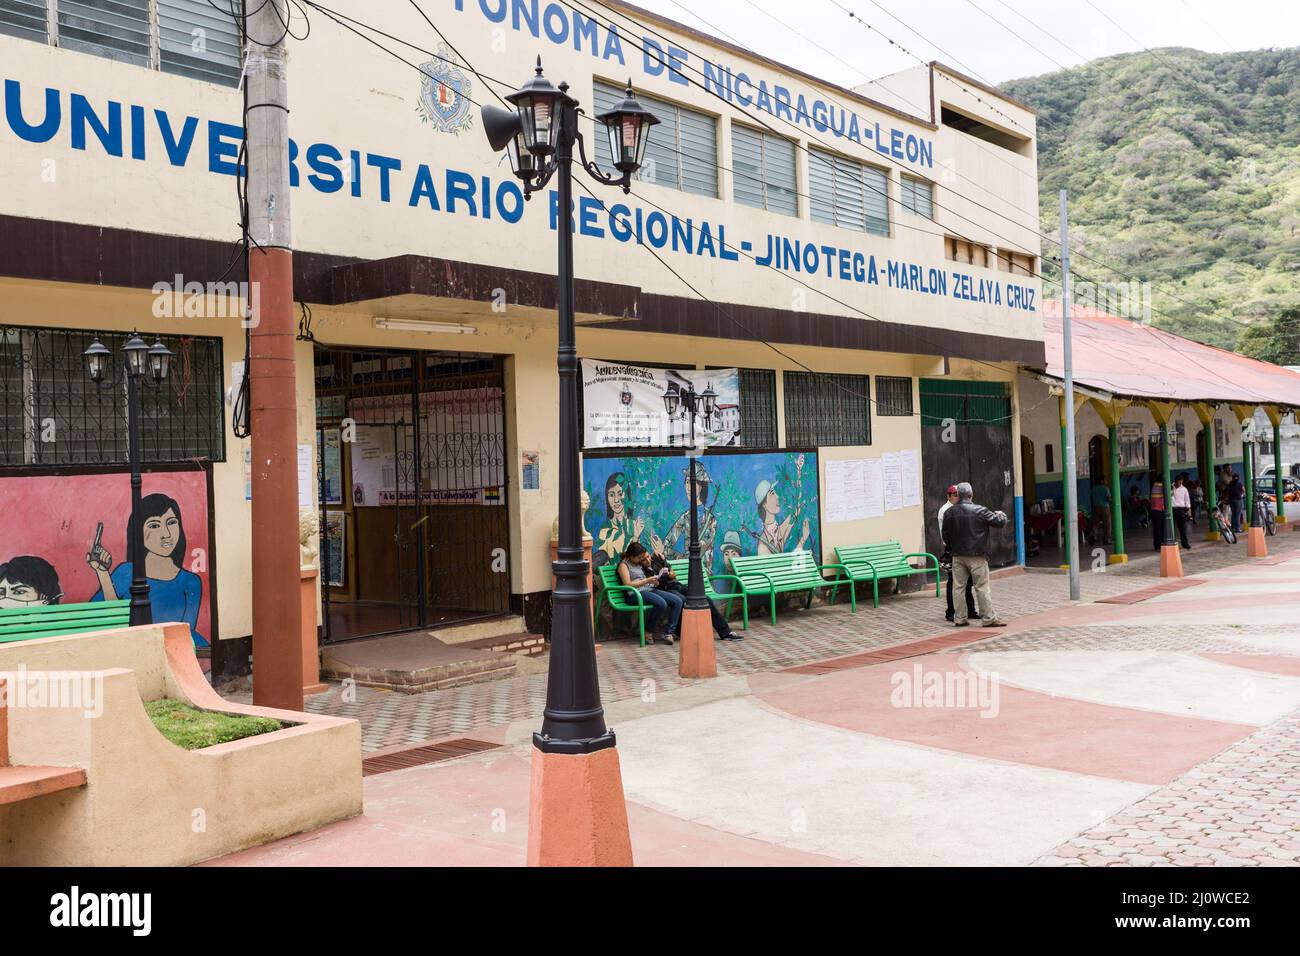 UNAN Leon - CUR Jinotega, eine Zweiguniversität in Jinotega, Nicaragua, ist mit Wandgemälden geschmückt, die Szenen aus der Revolution der Ära 1979 darstellen. Stockfoto